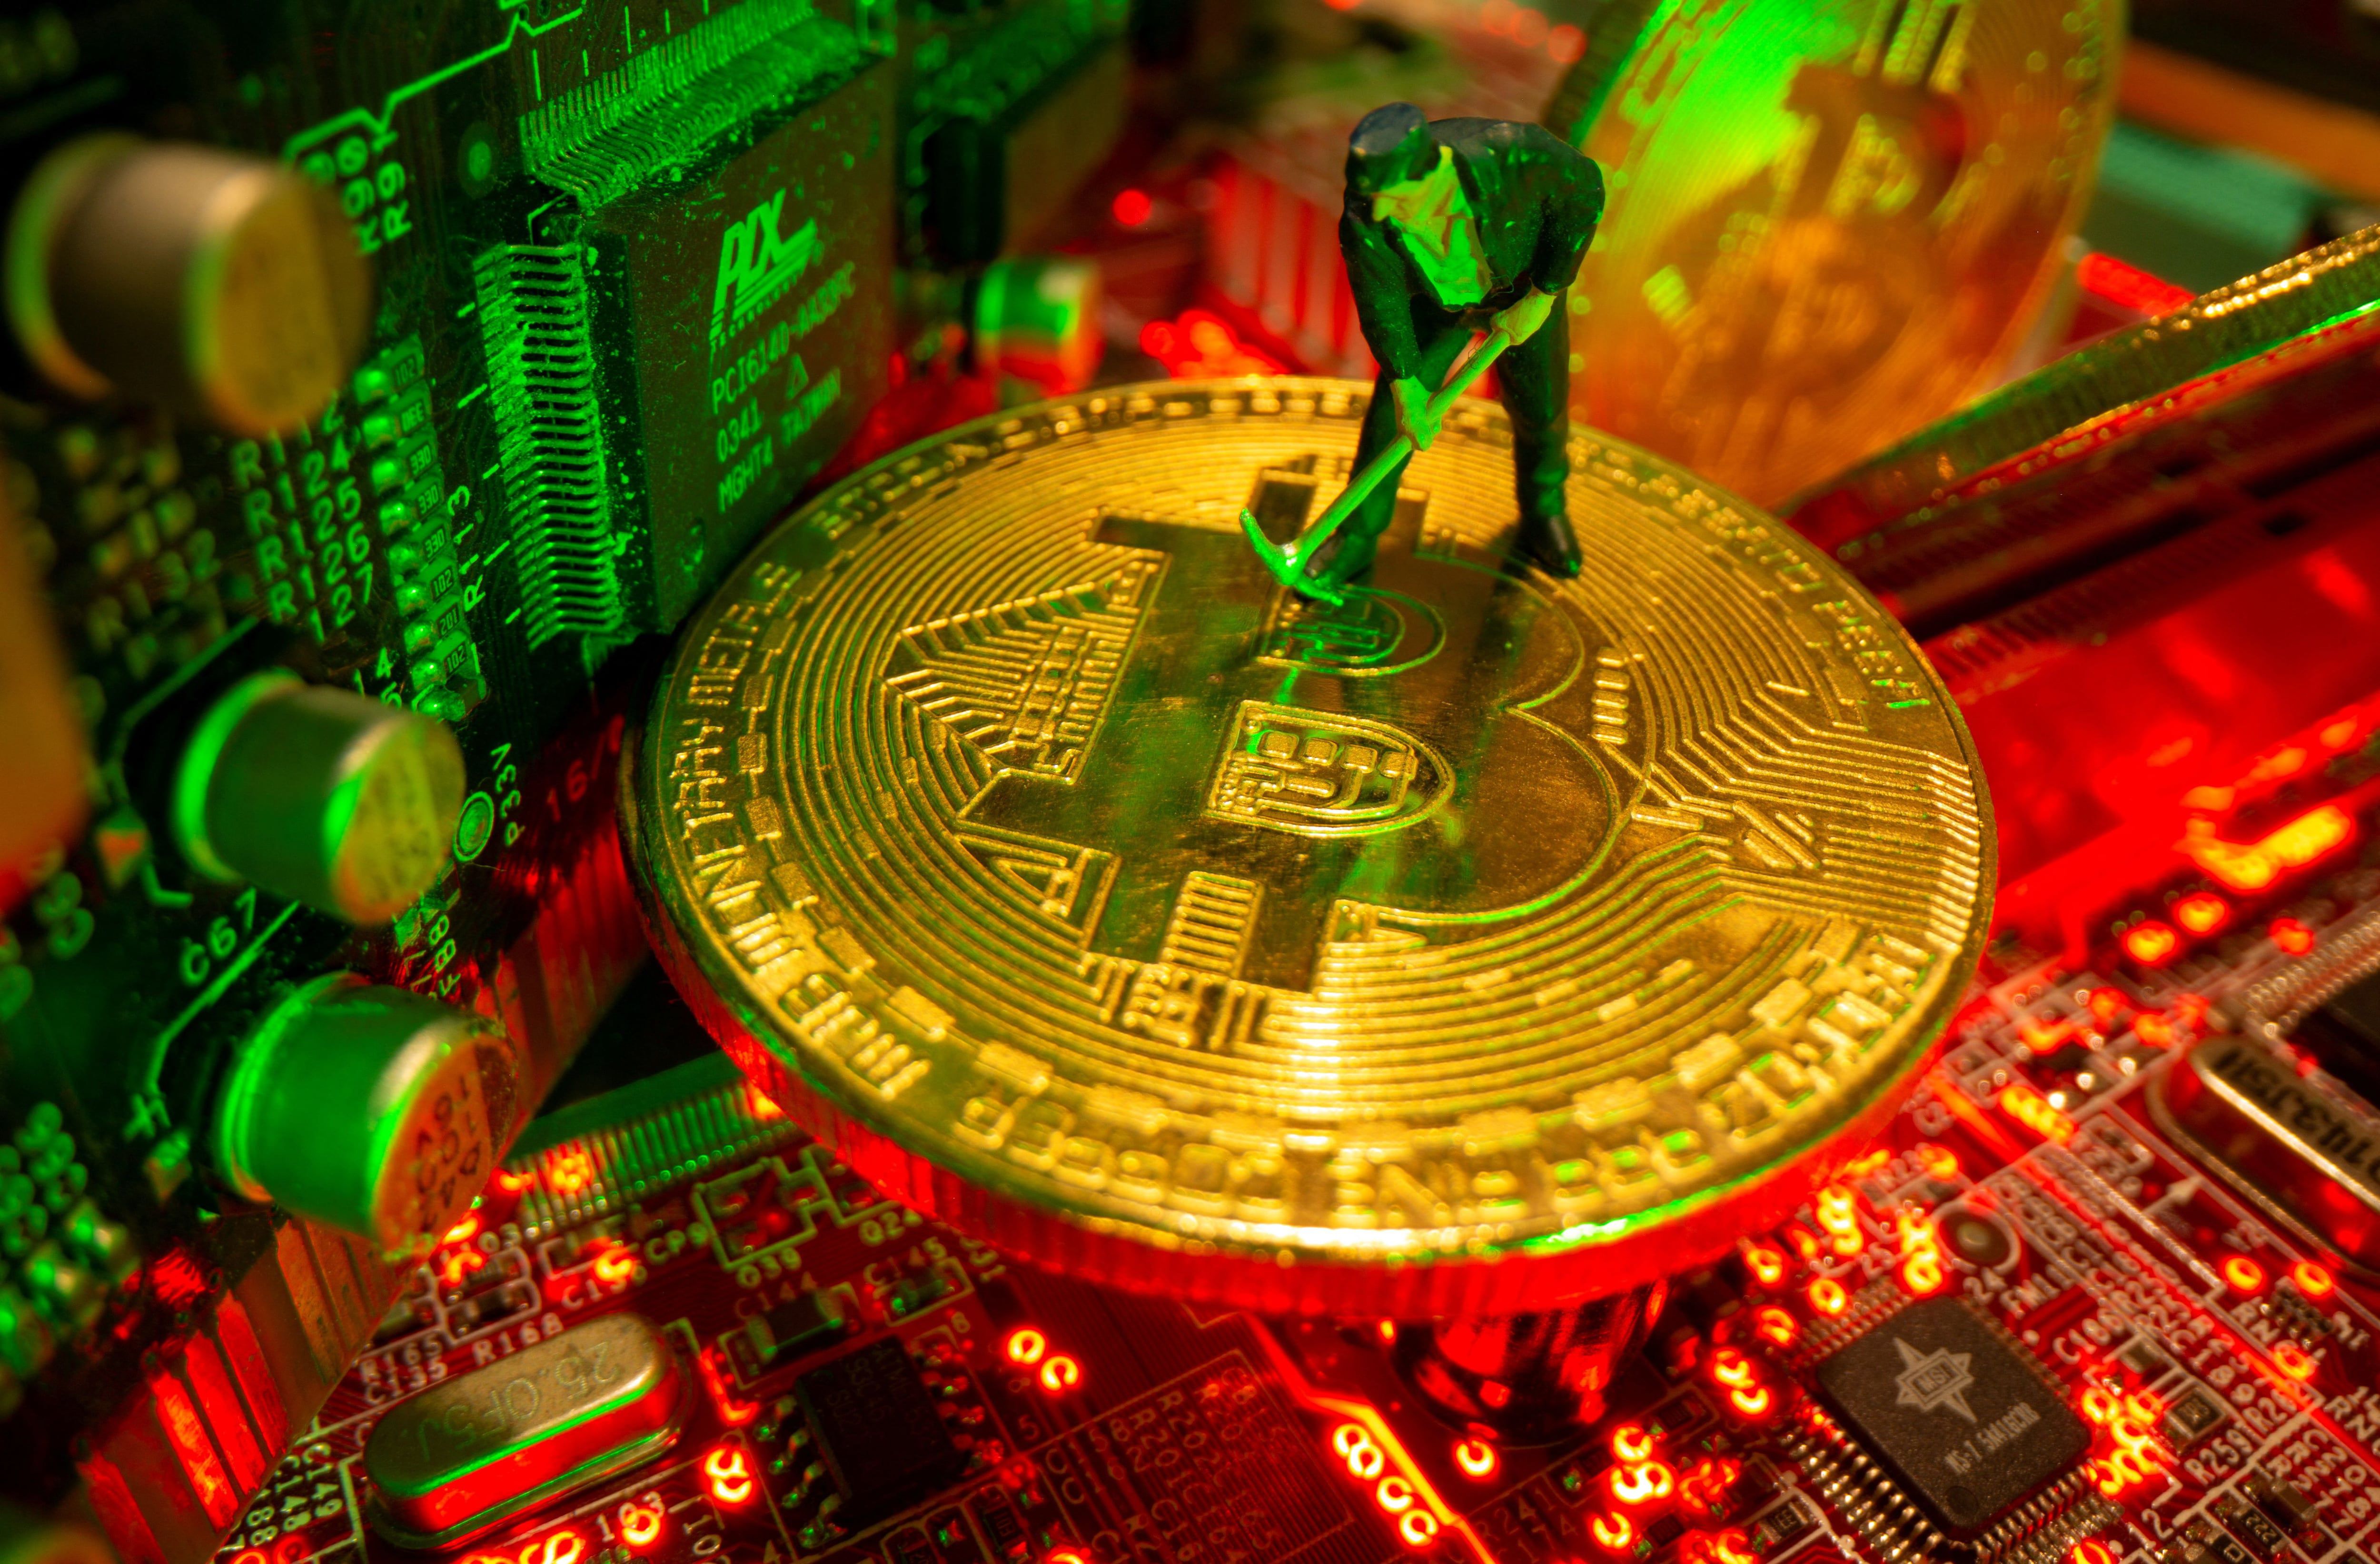 Representación de una minería de bitcoins. (REUTERS/Dado Ruvic)